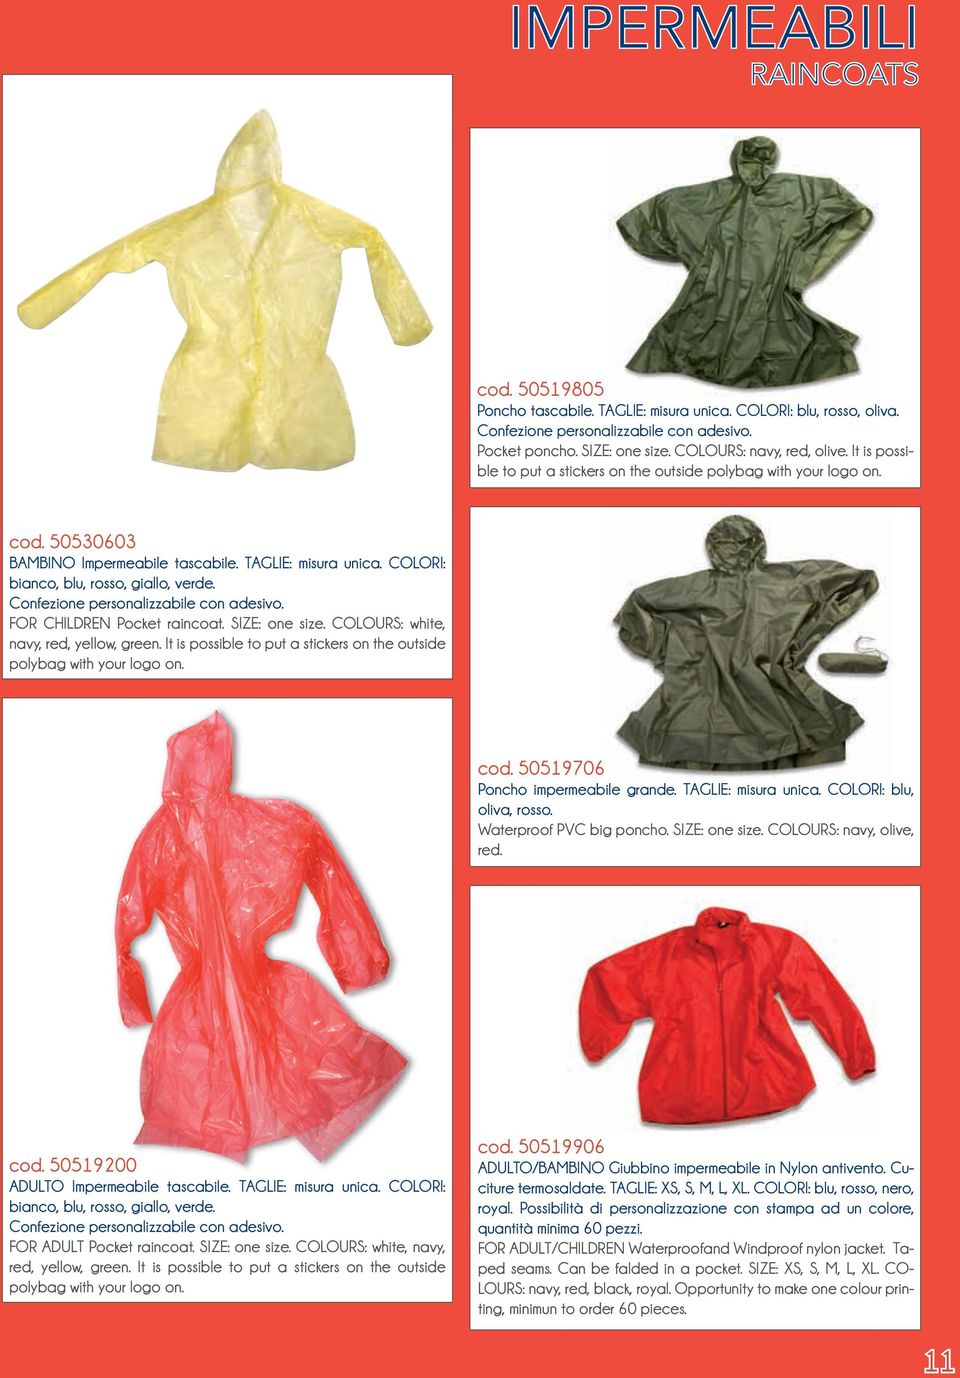 Confezione personalizzabile con adesivo. FOR CHILDREN Pocket raincoat. SIZE: one size. COLOURS: white, navy, red, yellow, green.